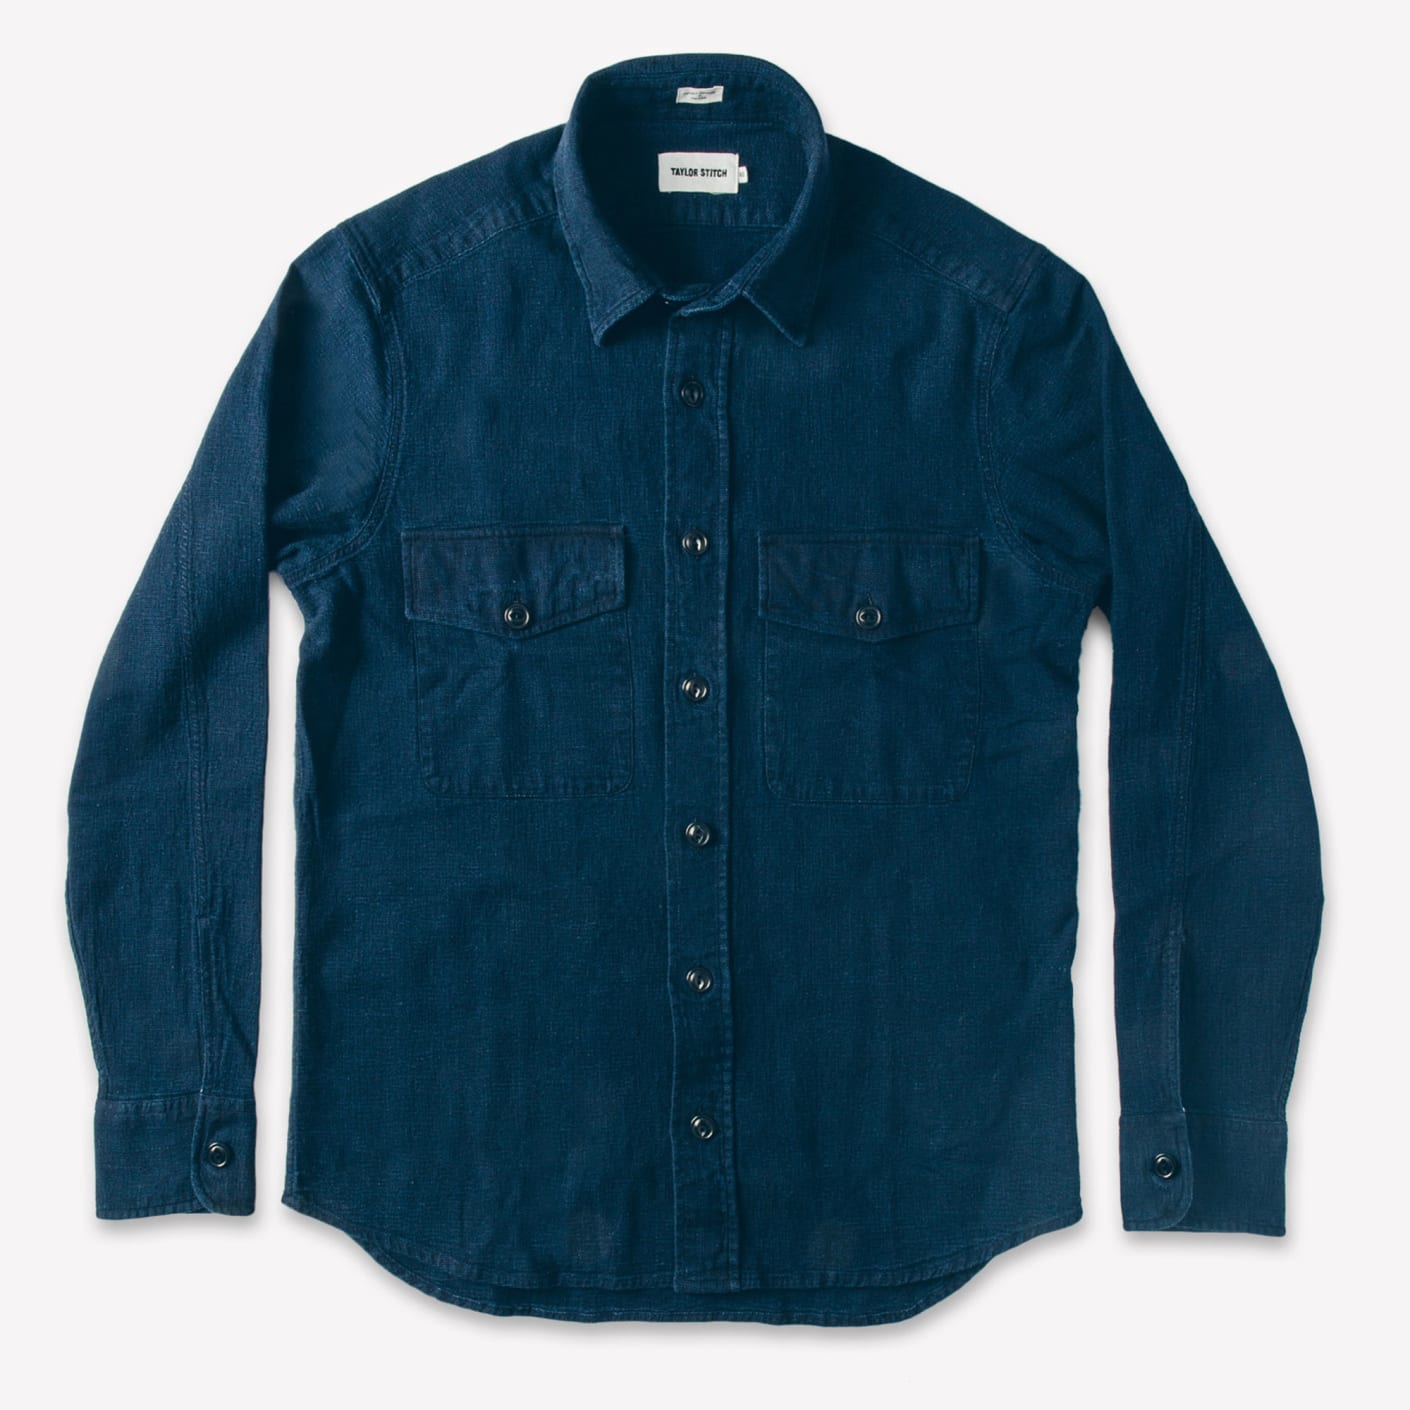 Taylor Stitch The Maritime Shirt Jacket – Sea Washed Indigo | Bespoke Post